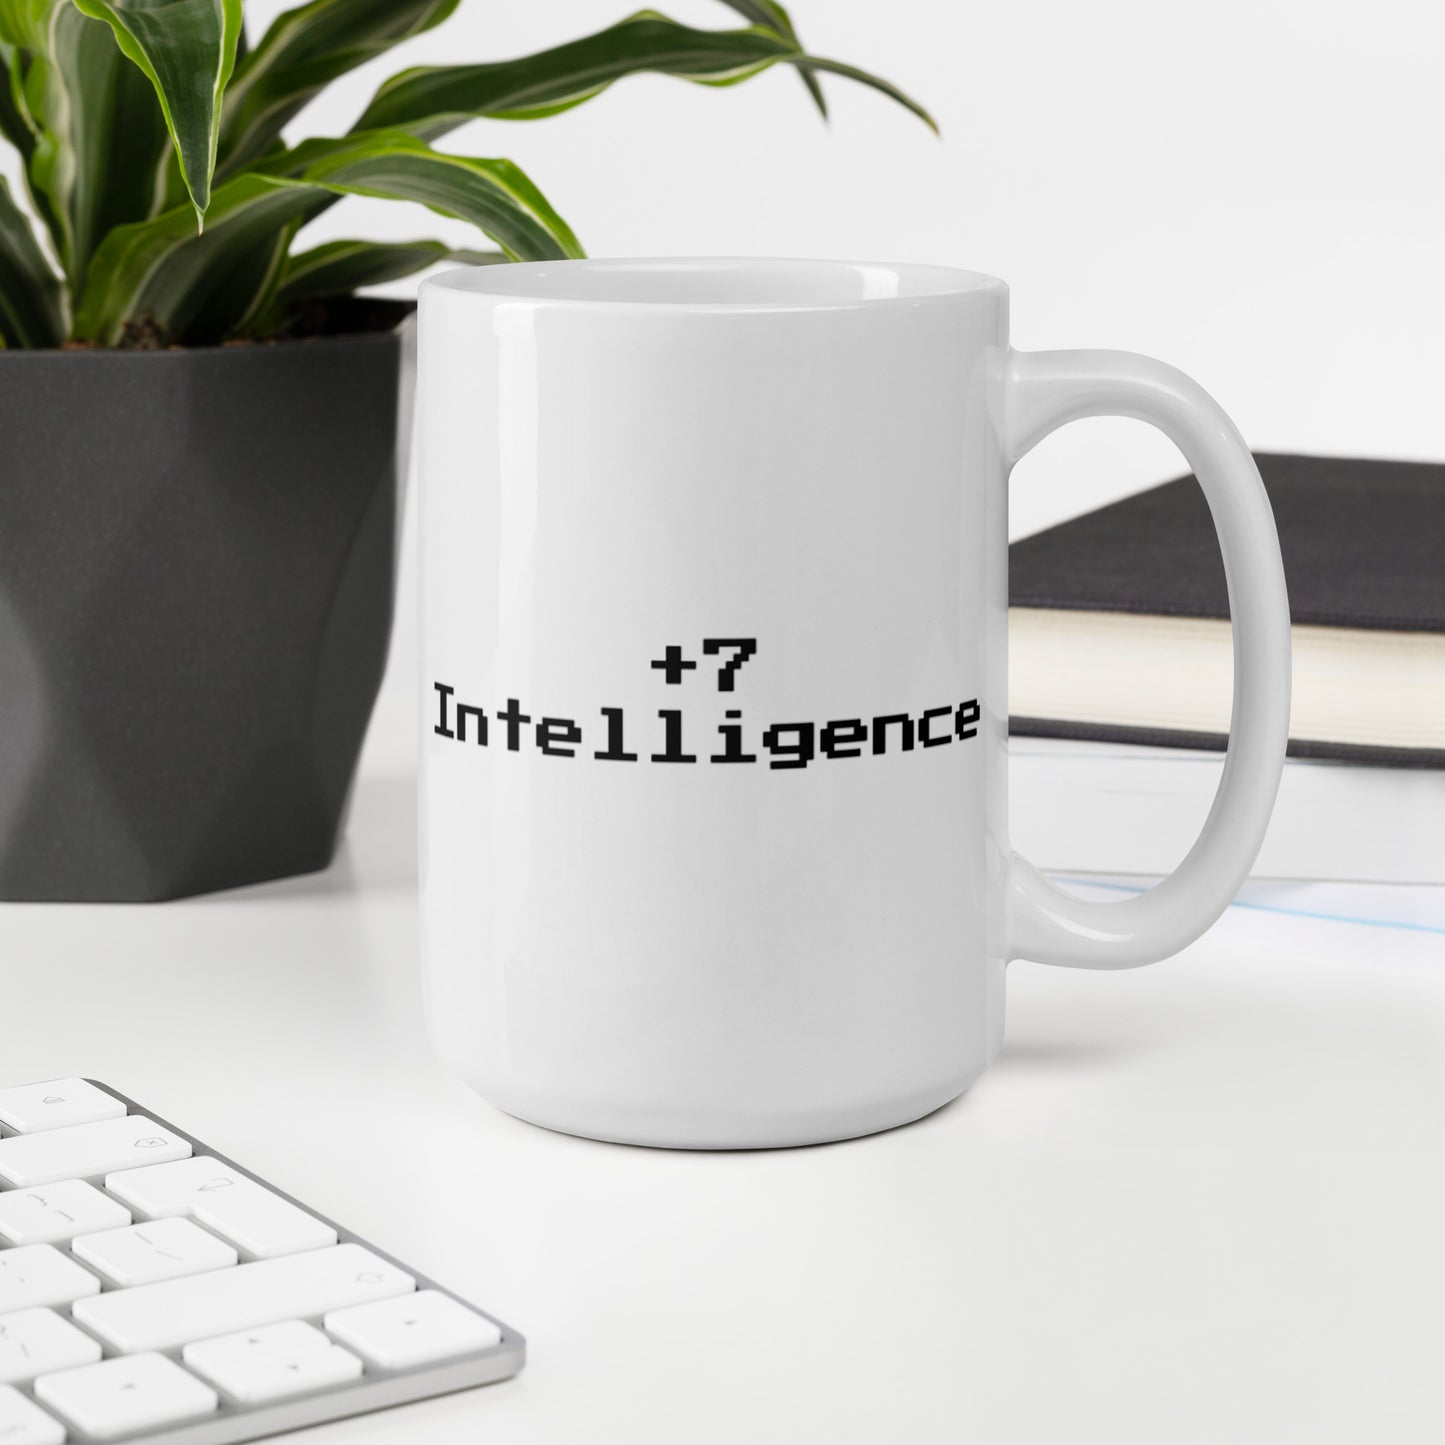 +7 intelligence - Mug